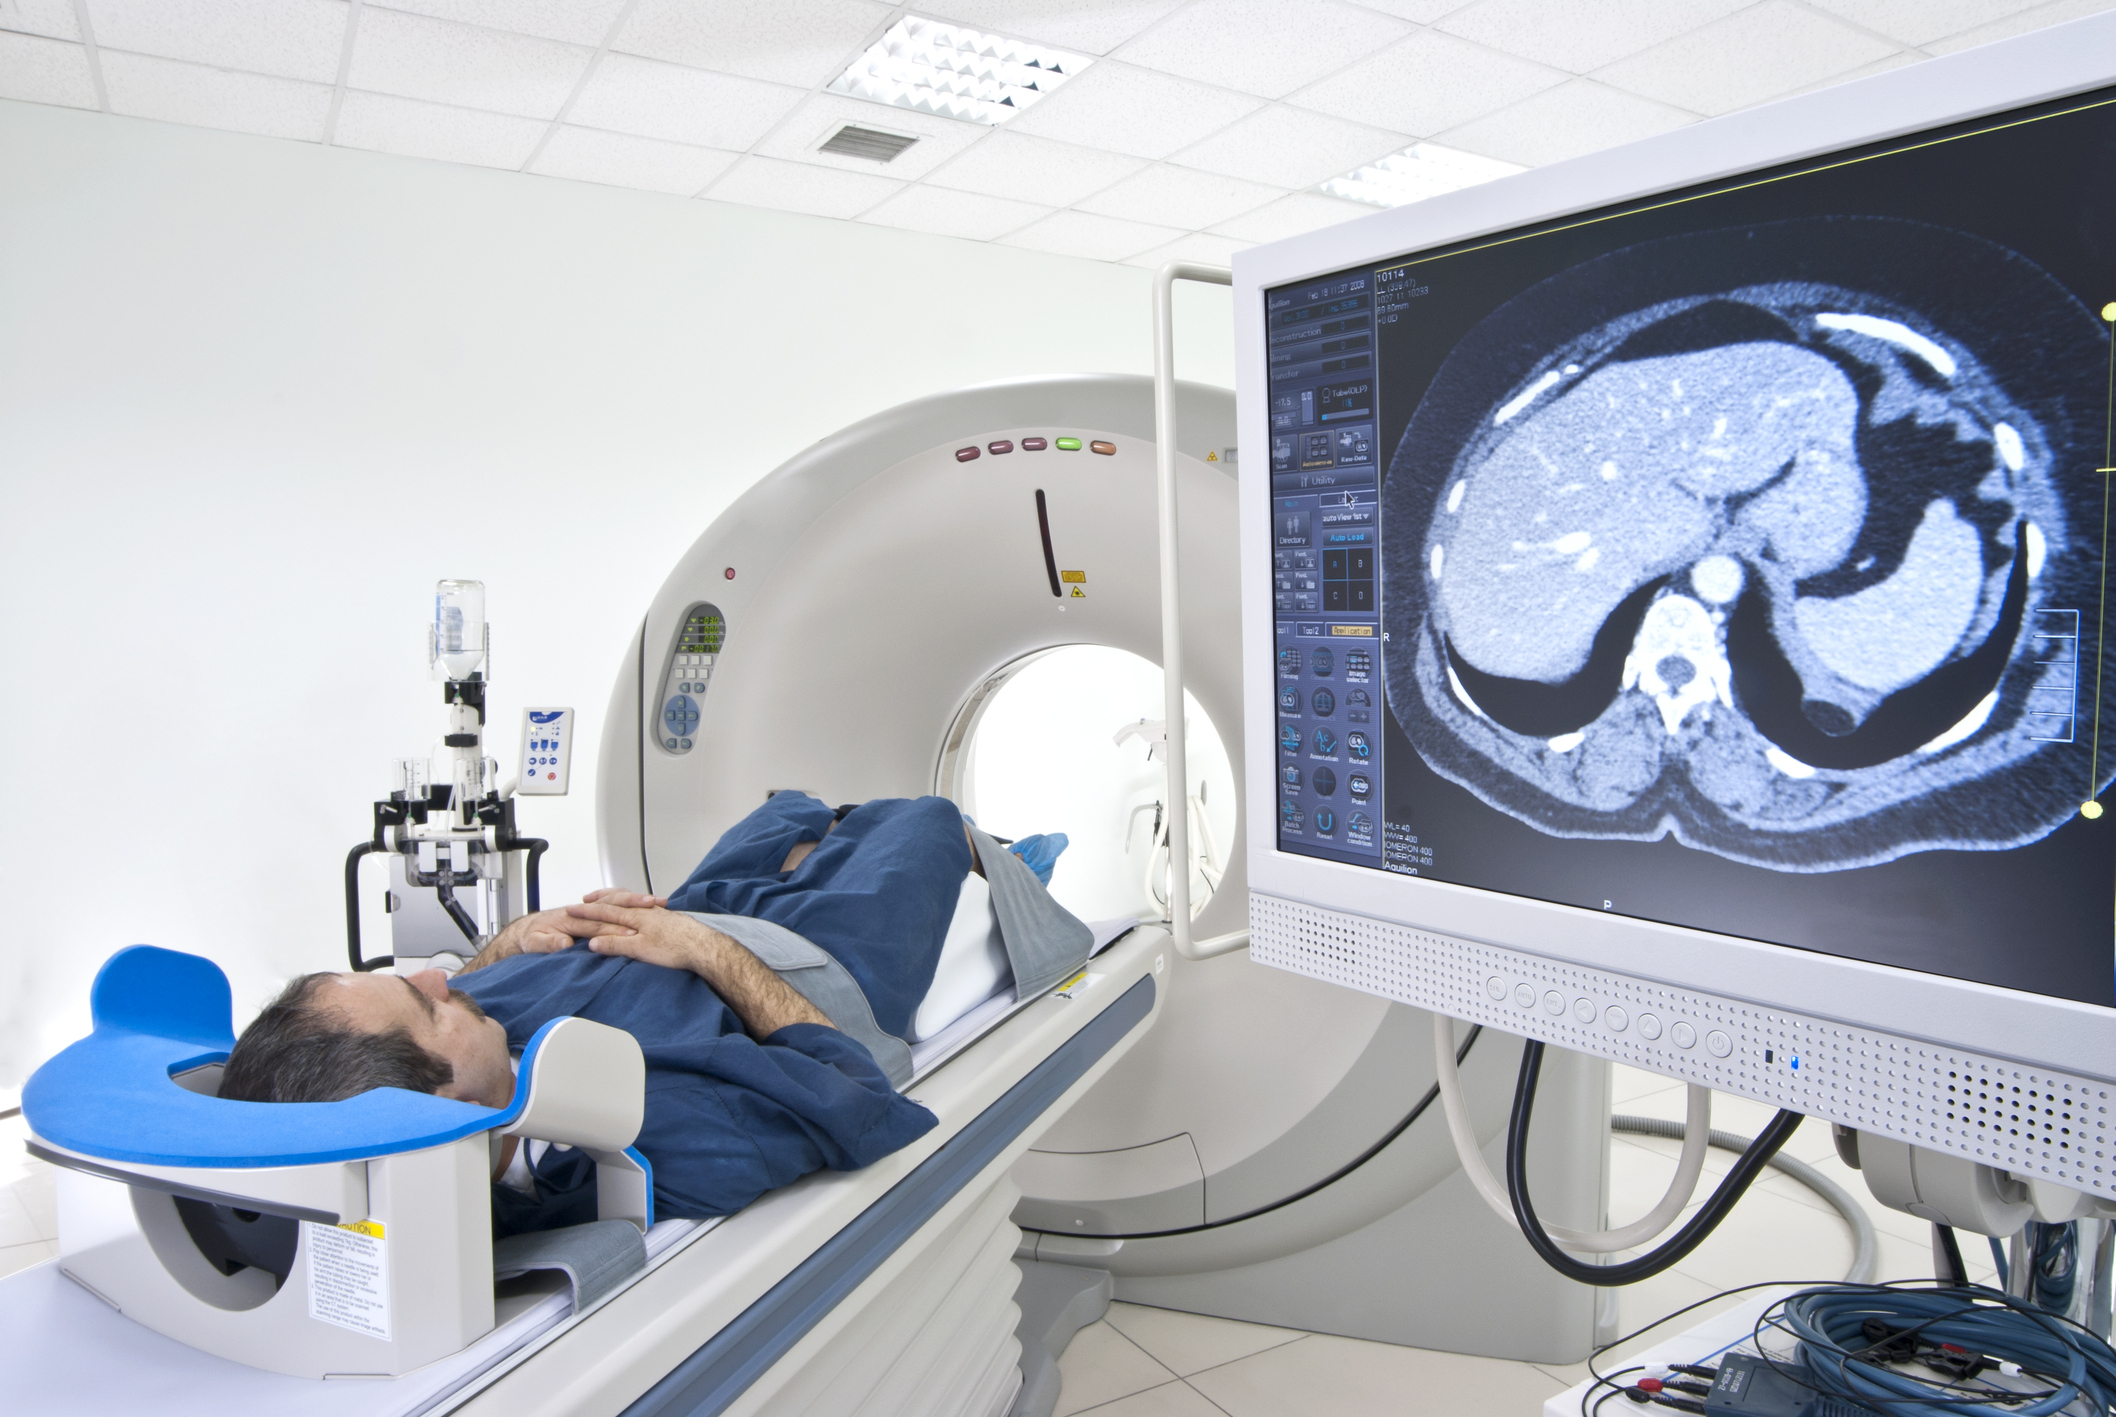 Tomografia computadorizada: conheça os riscos e benefícios do exame